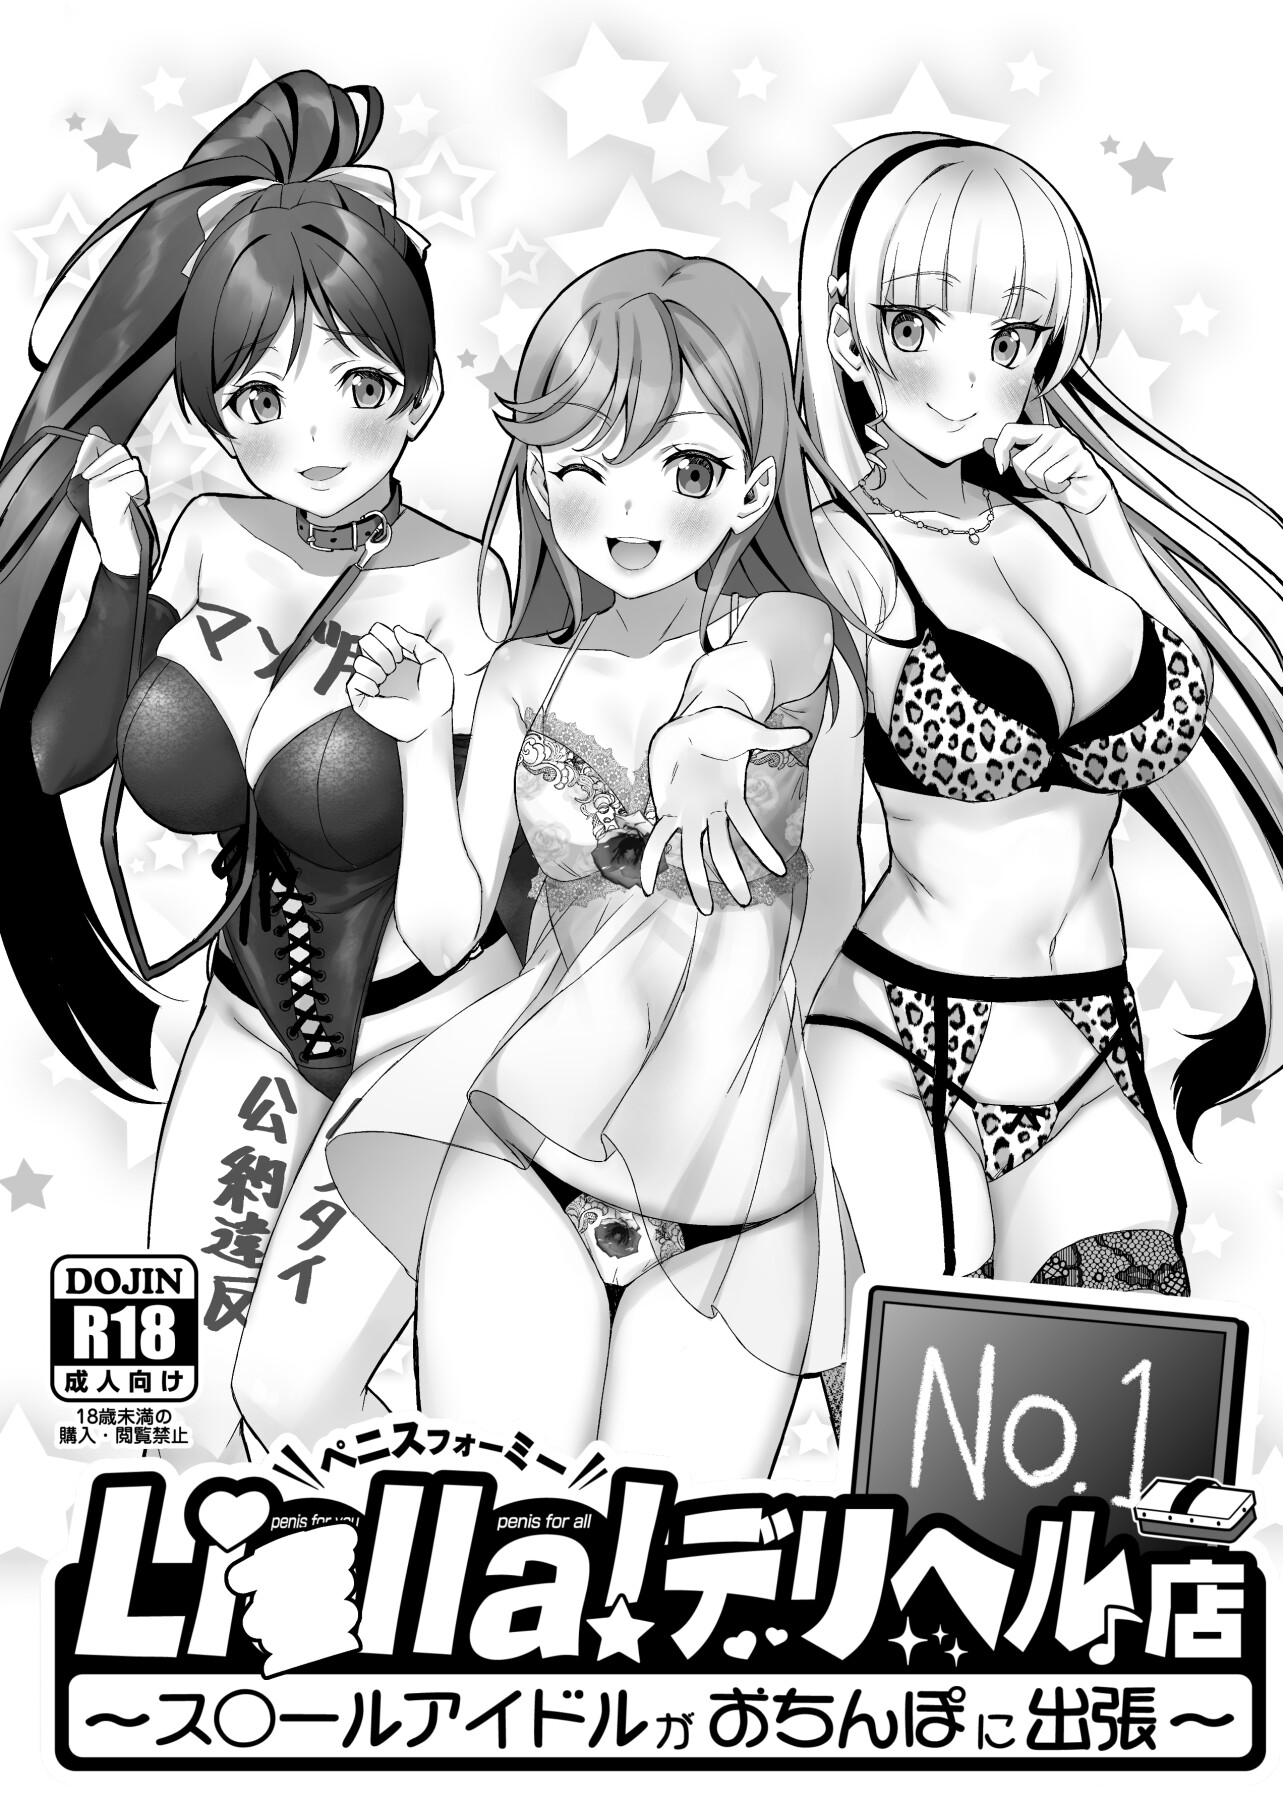 hentai manga Liella! ~School Idols on a Trip in Search of Dick~